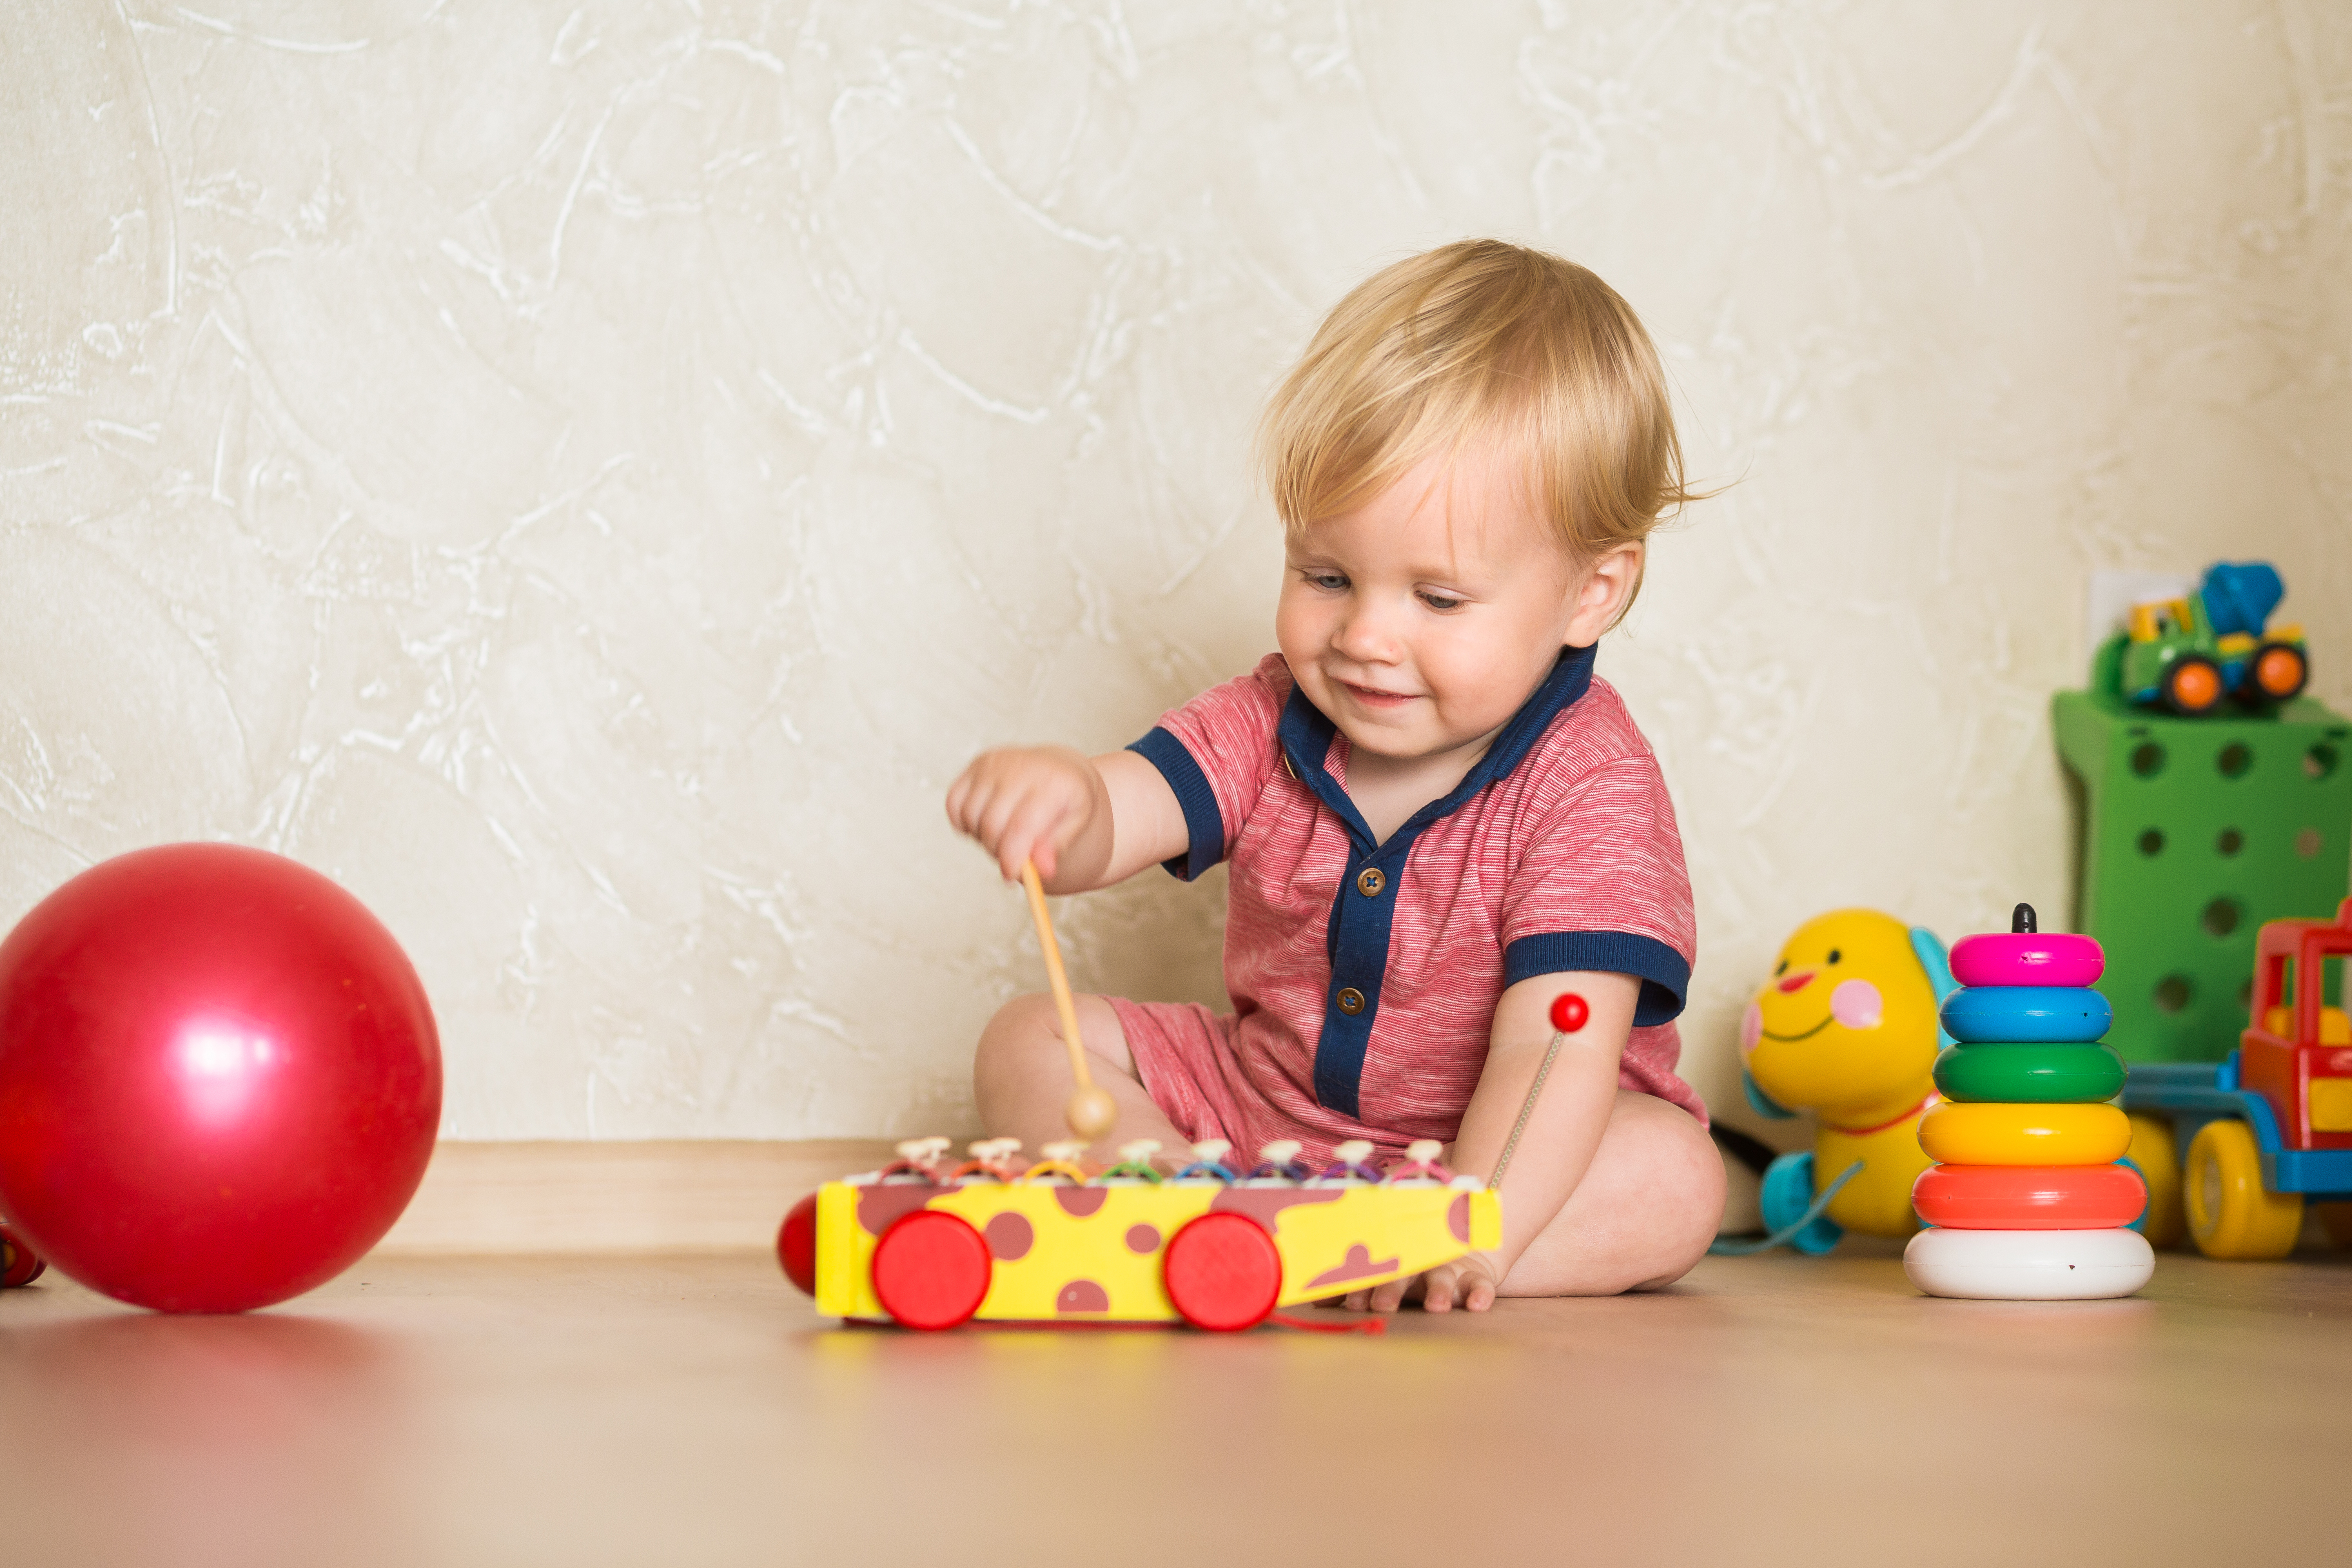 Zabawy dla rocznego dziecka — sensoryczne i kreatywne zabawy - Dziecko